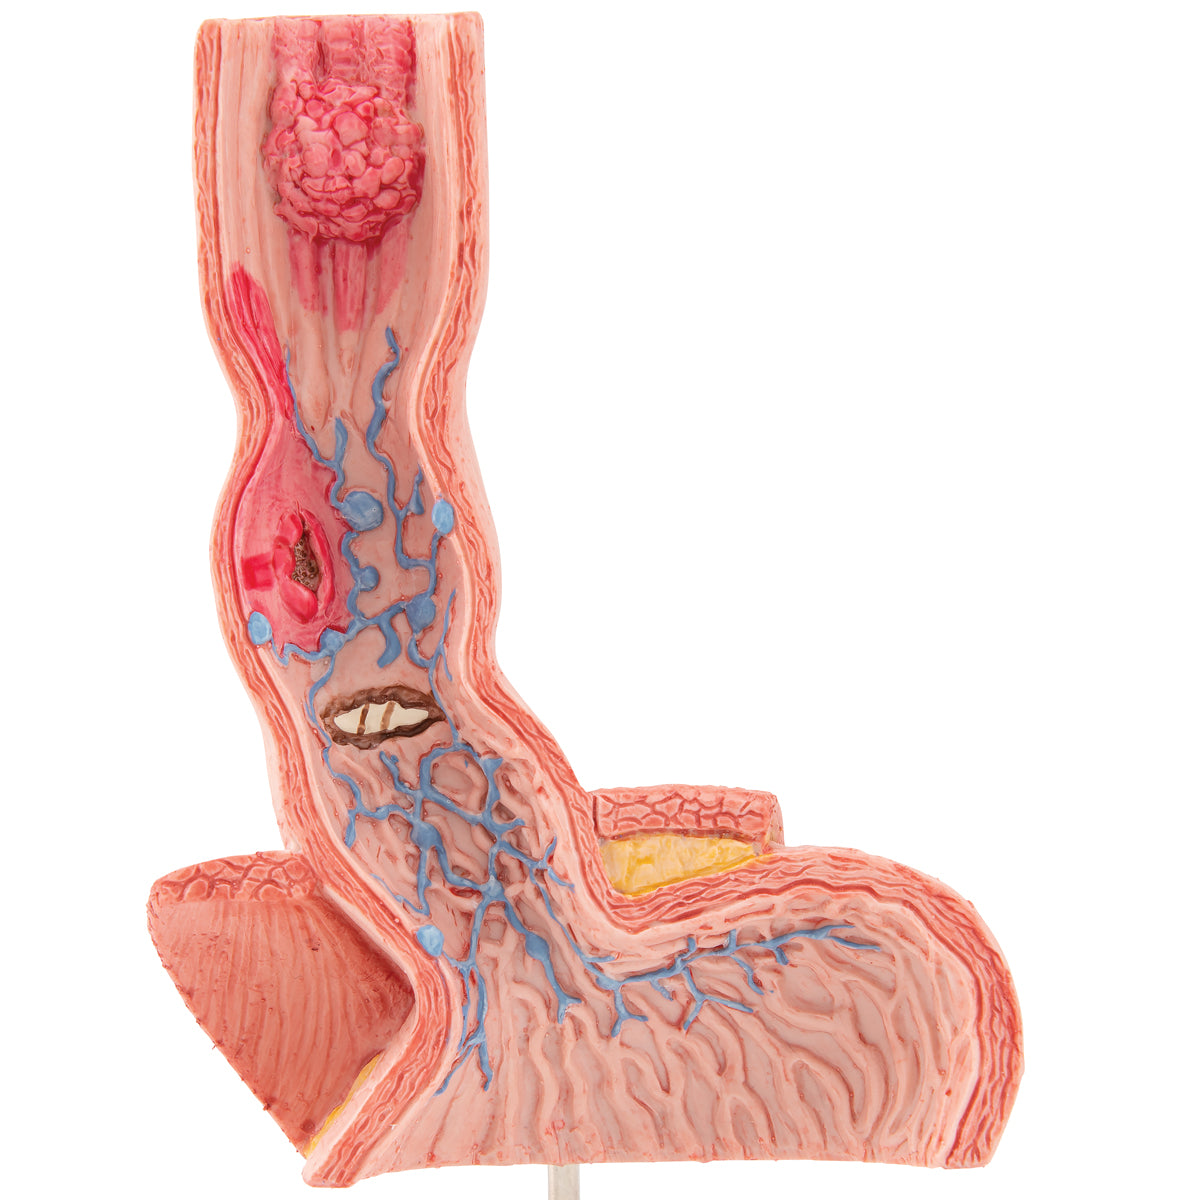 Modell som visar matstrupen och lite av insidan av magsäcken med olika sjukdomar